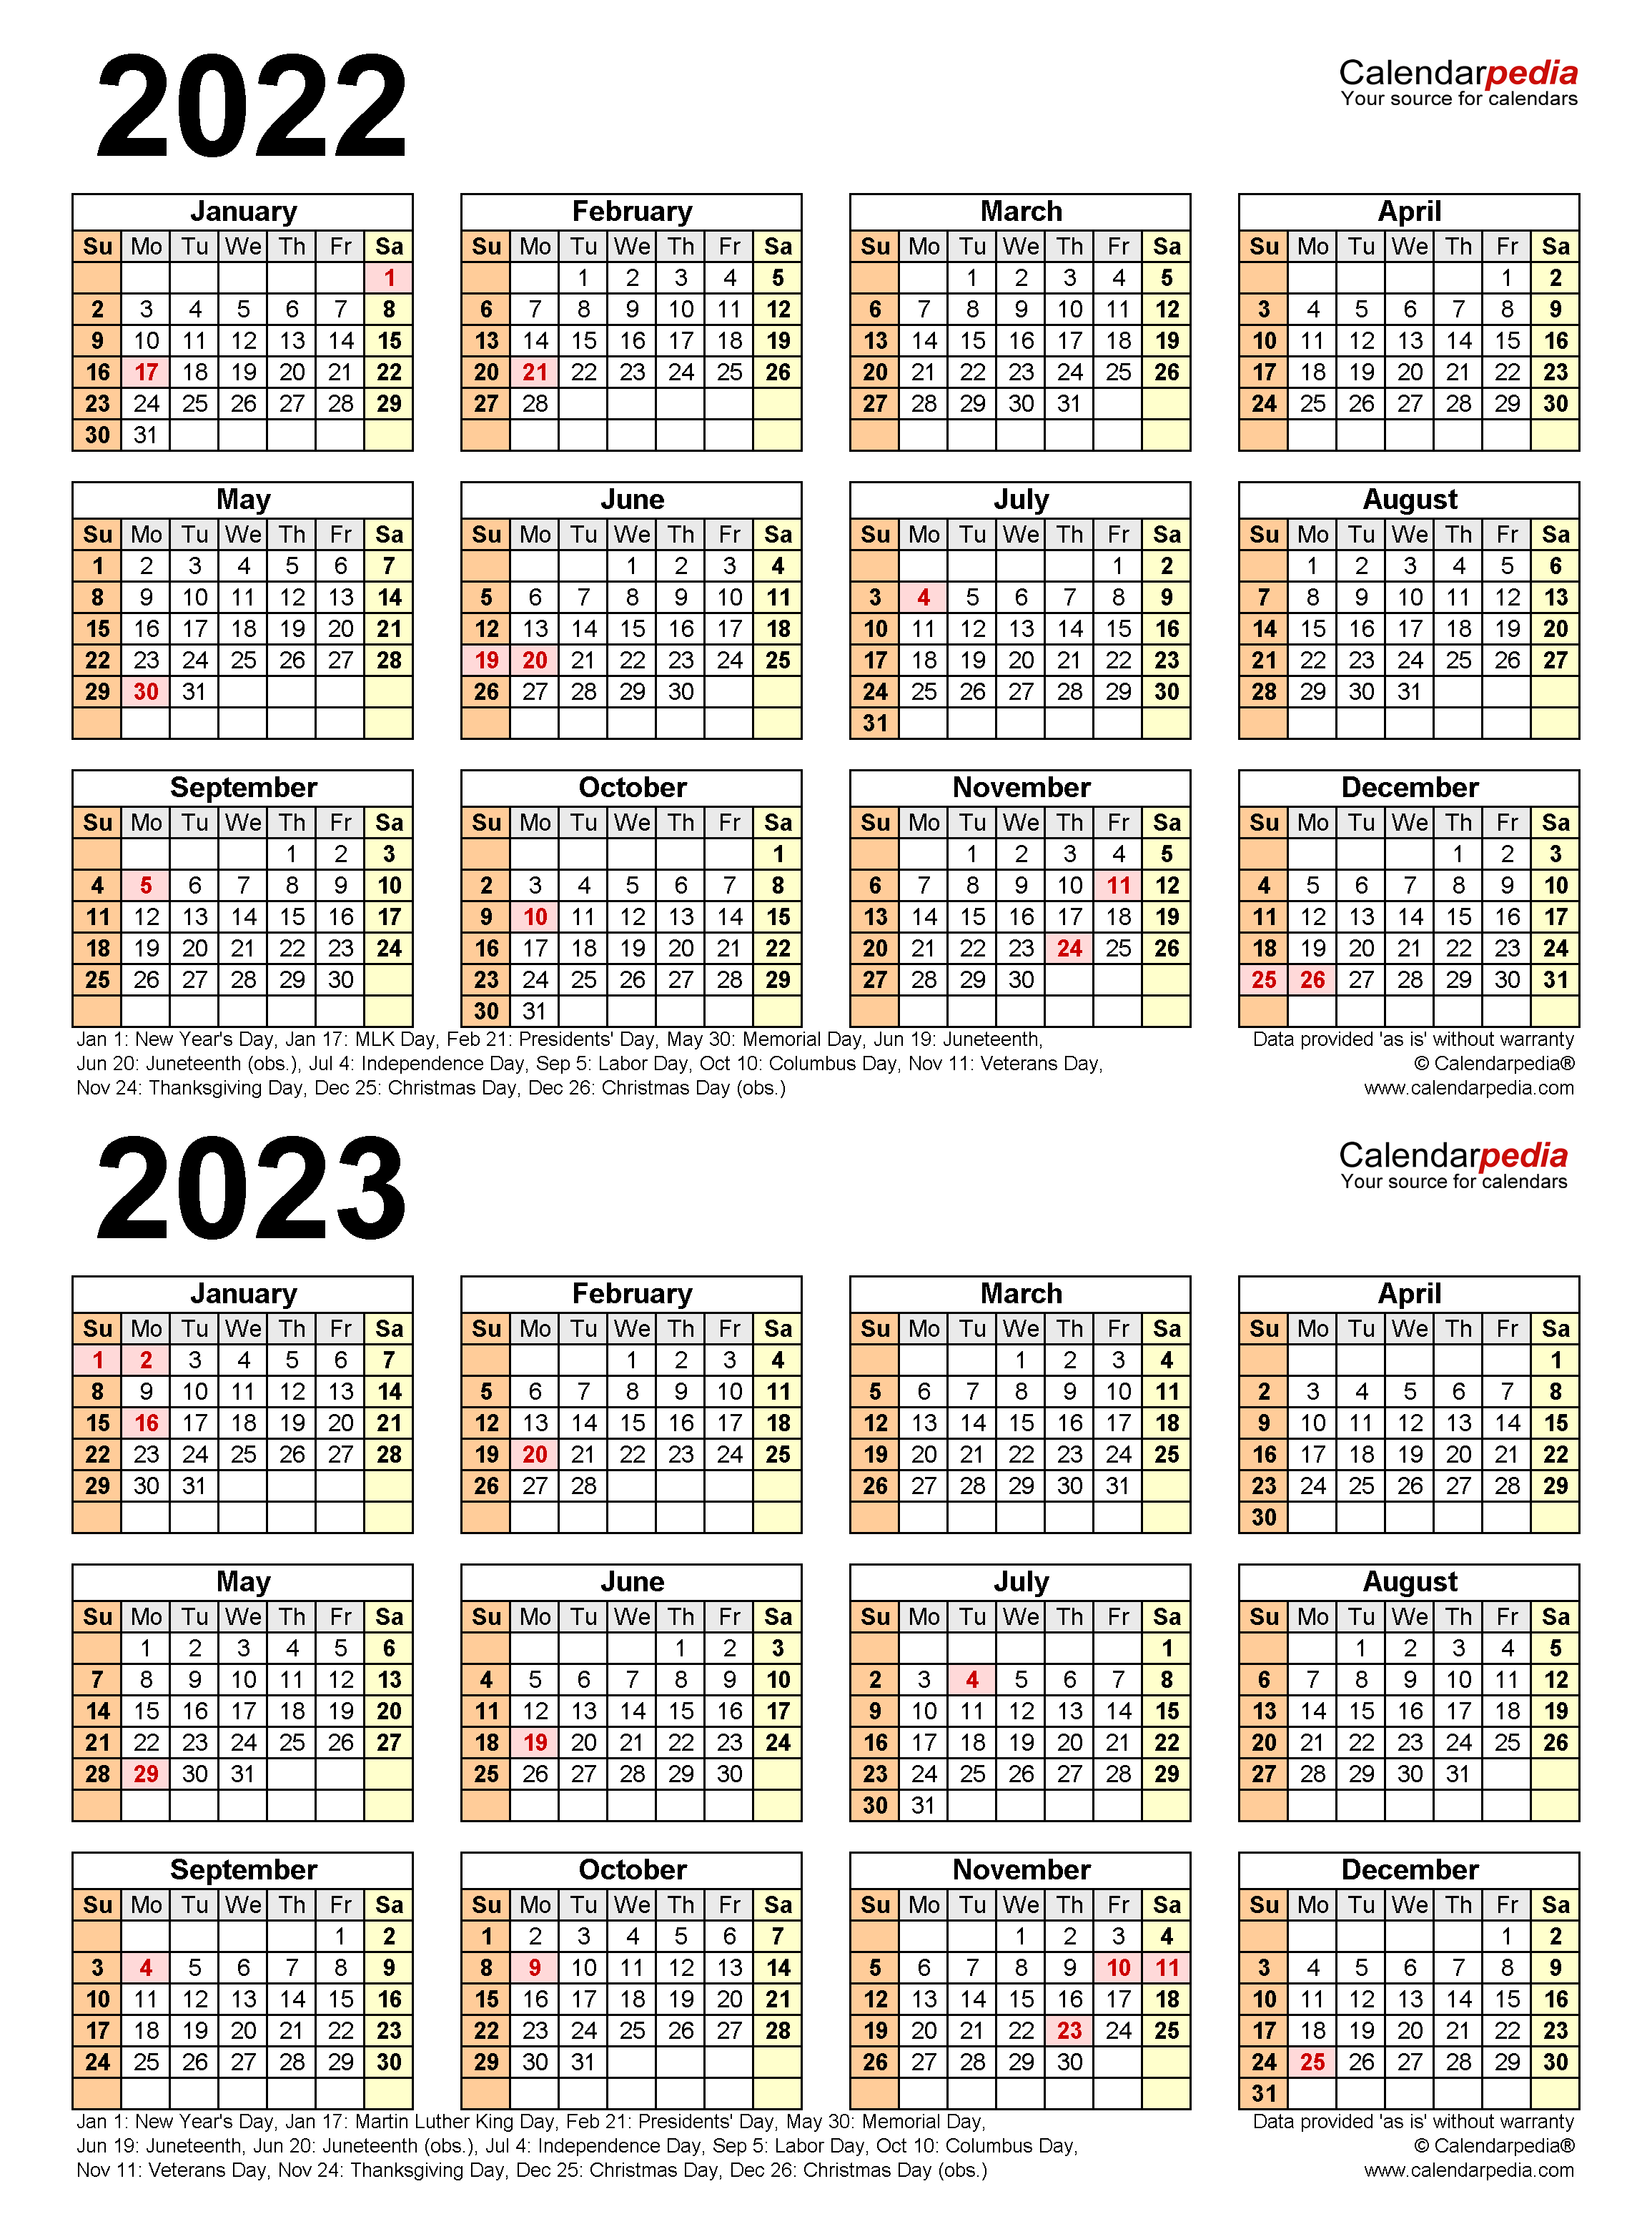 neisd-school-calendar-2023-2024-get-calendar-2023-update